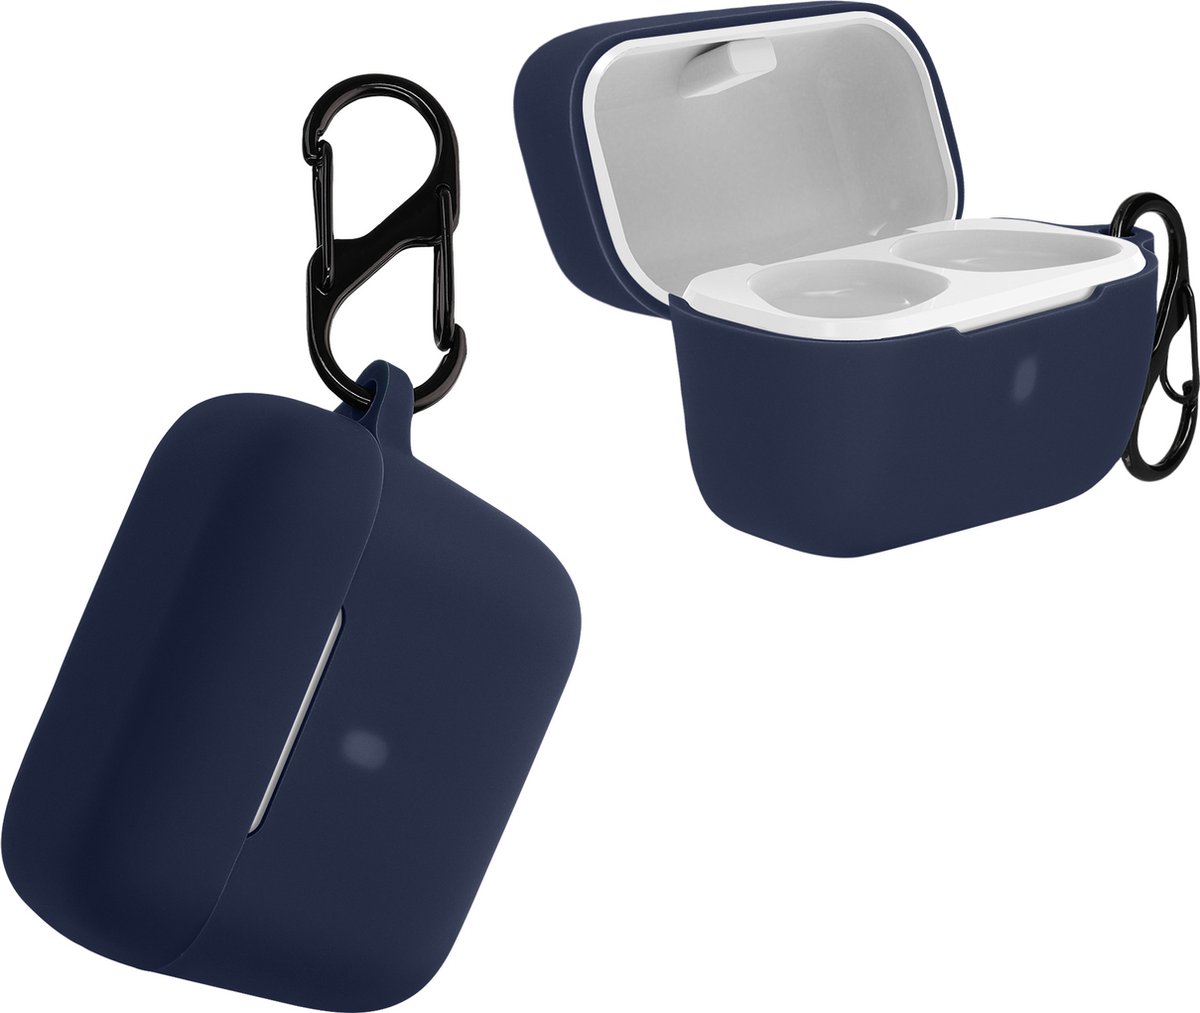 kwmobile Hoes voor Sennheiser CX True Wireless - Siliconen cover voor oordopjes in donkerblauw